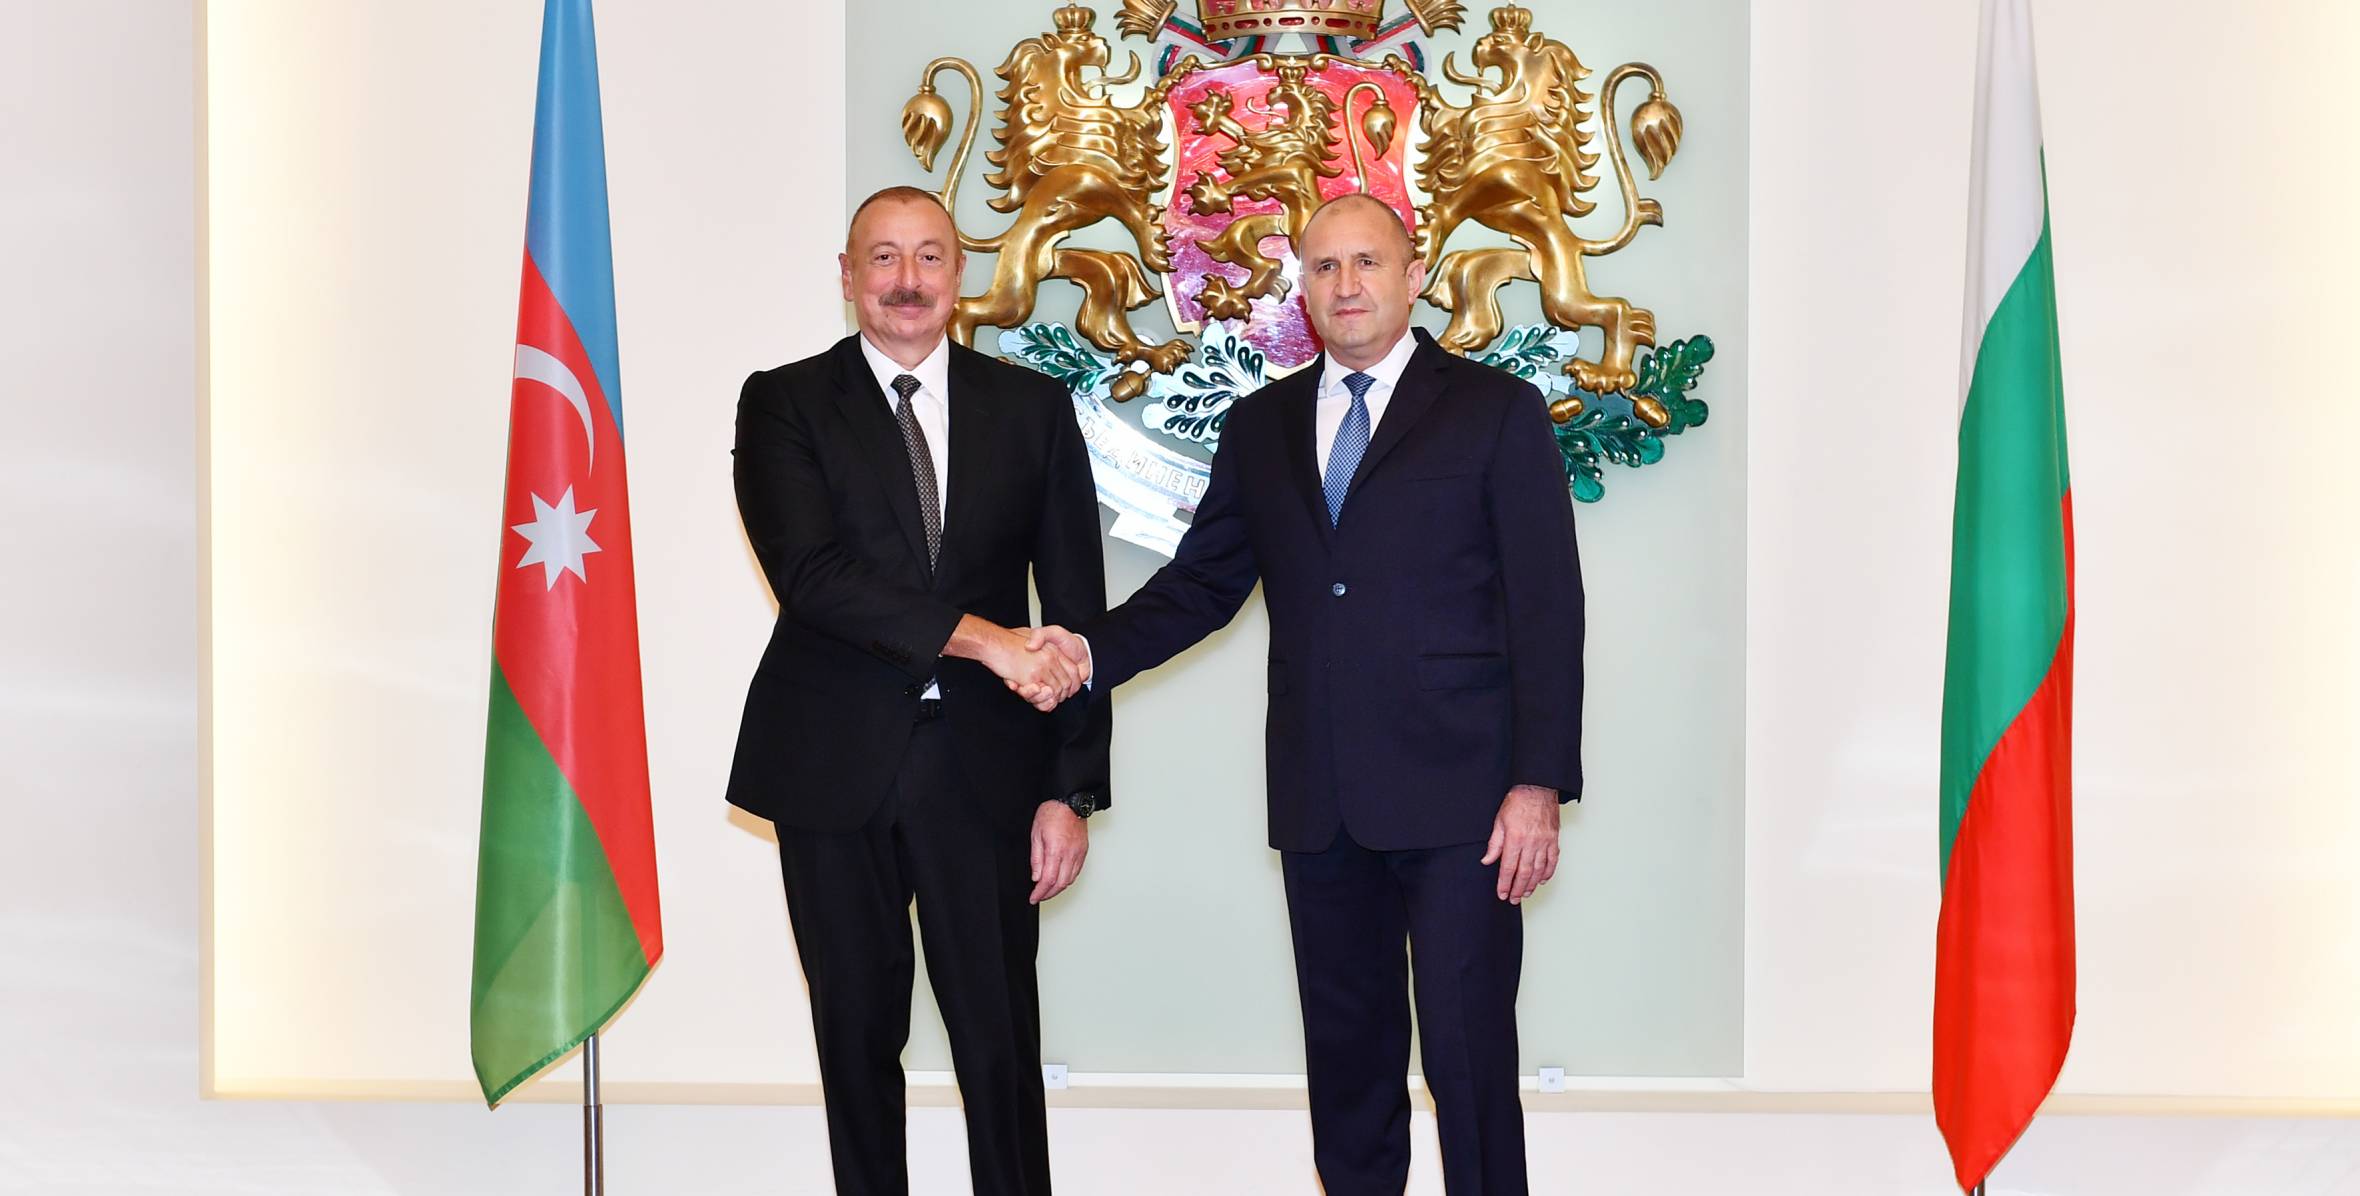 Ilham Aliyev and President of Bulgaria Rumen Radev held one-on-one meeting